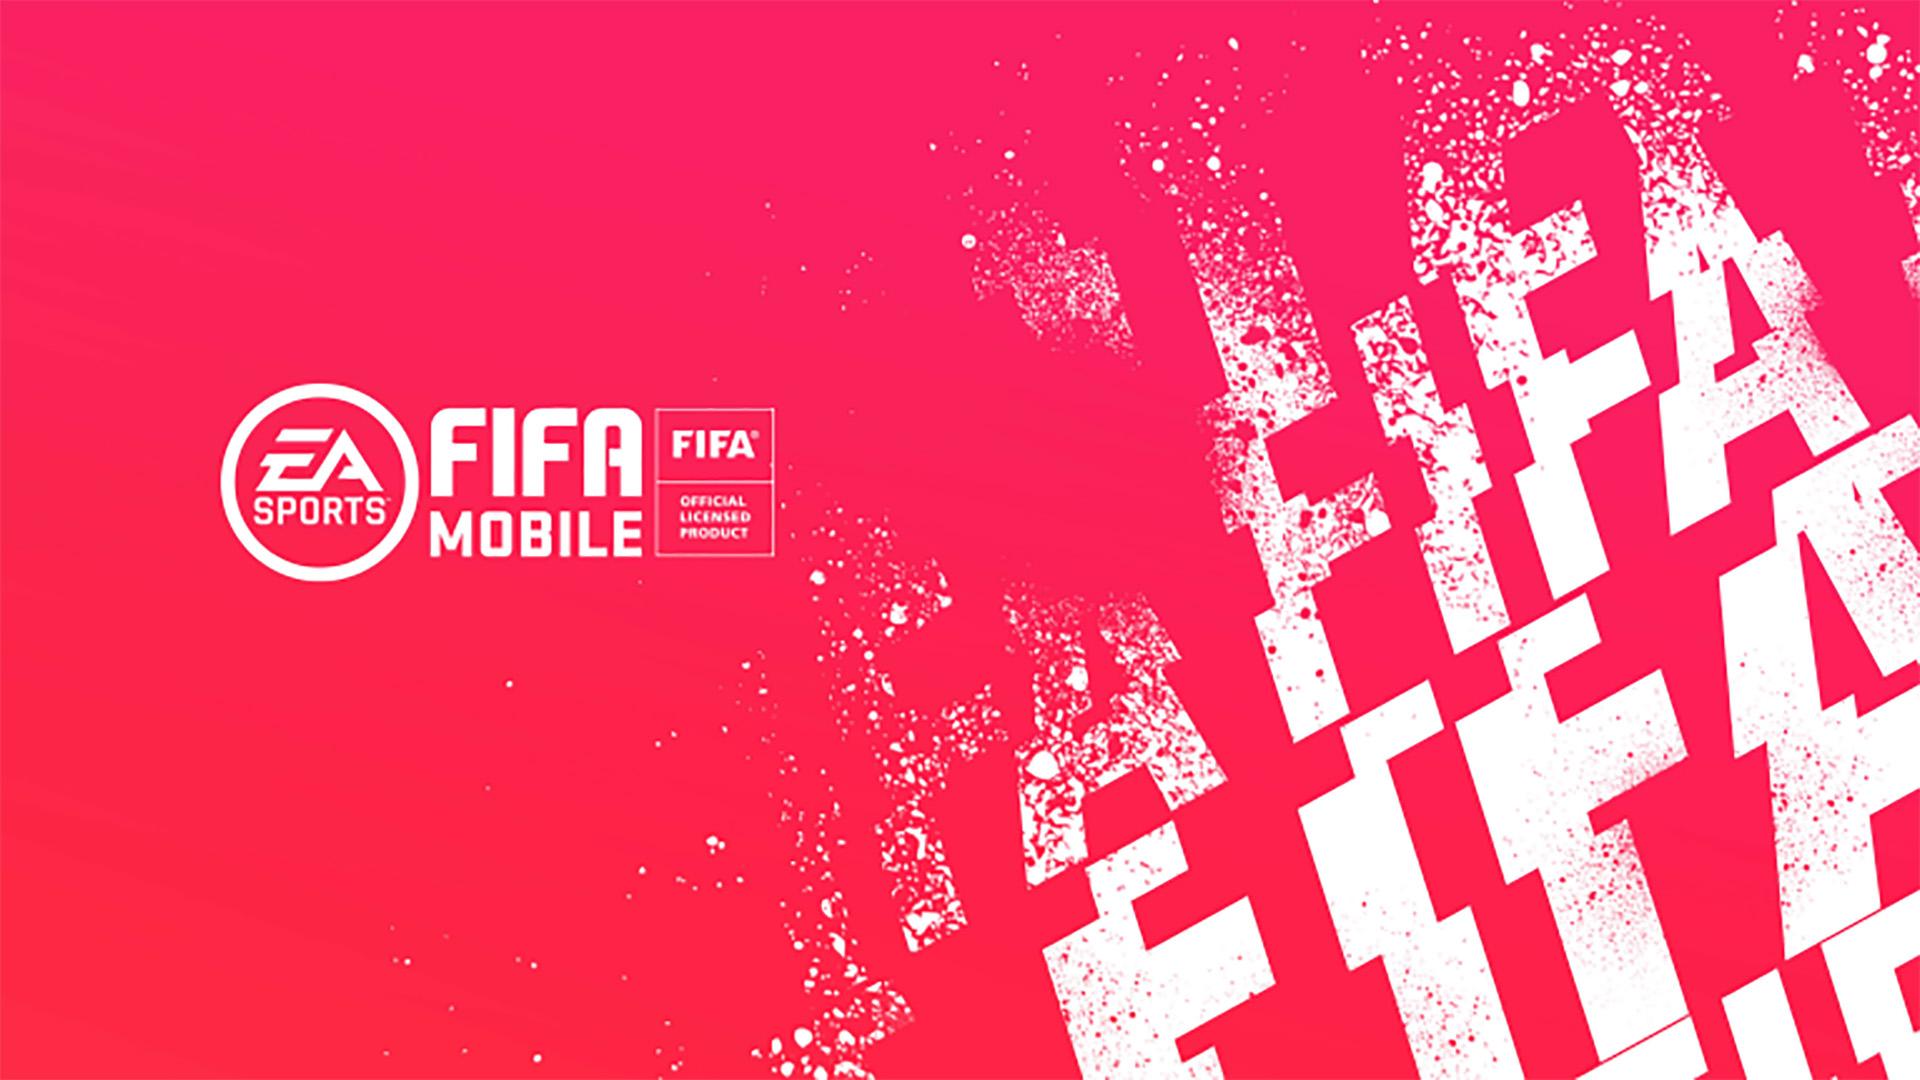 Fifa Mobile 20 - HD Wallpaper 